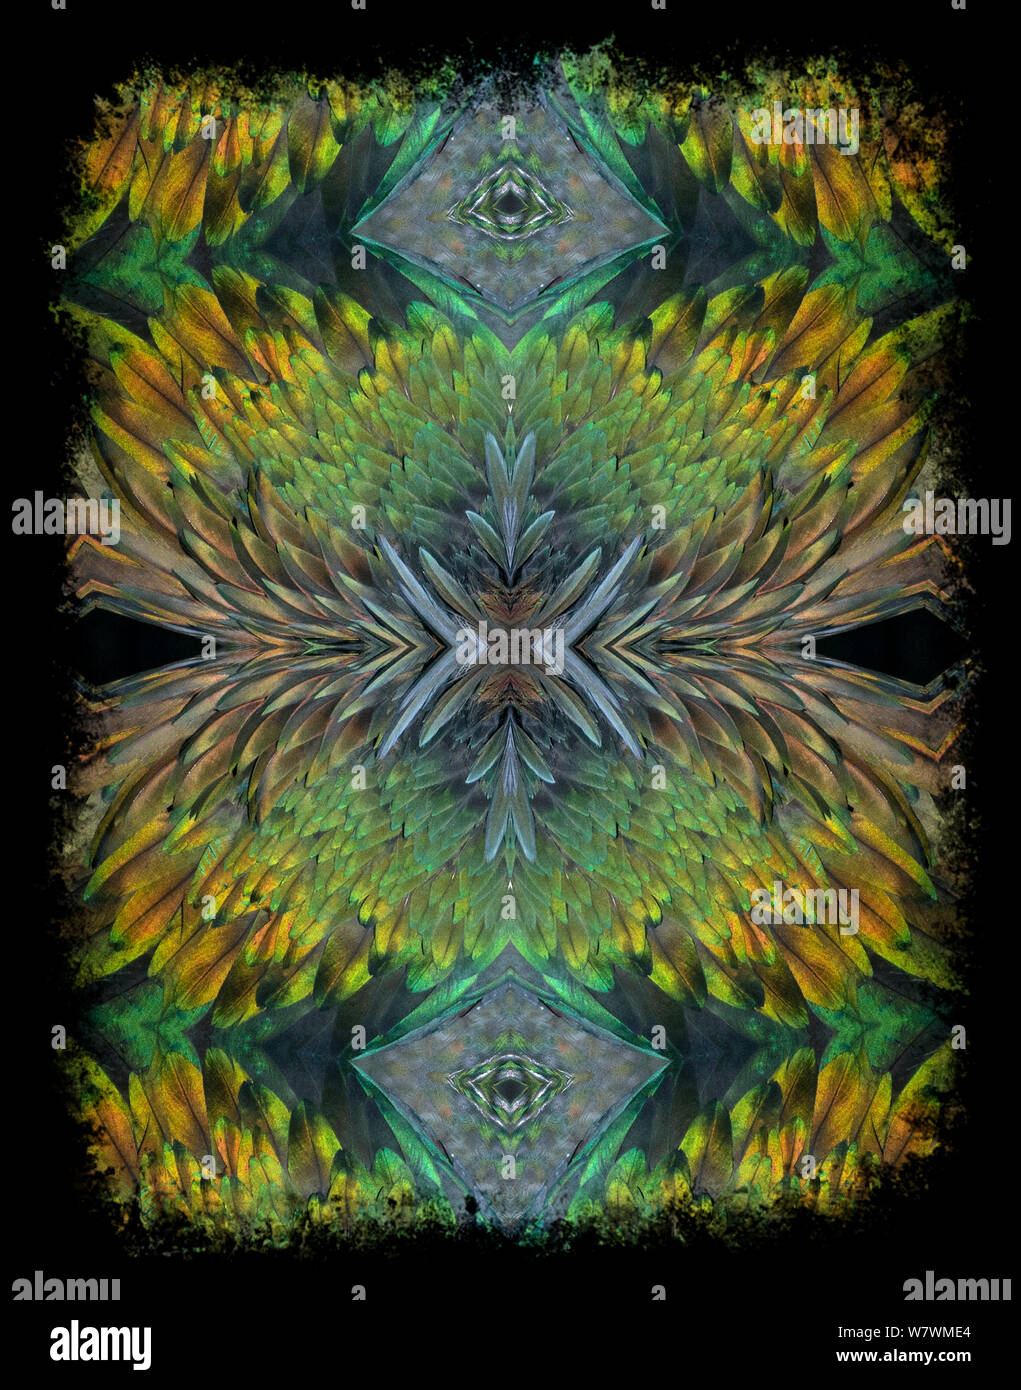 Kaleidoskop Muster aus Bild von Kragentaube (Caloenas nicobarica) Federn gebildet. Für die redaktionelle Nutzung bis Dezember 2015 eingeschränkt Stockfoto